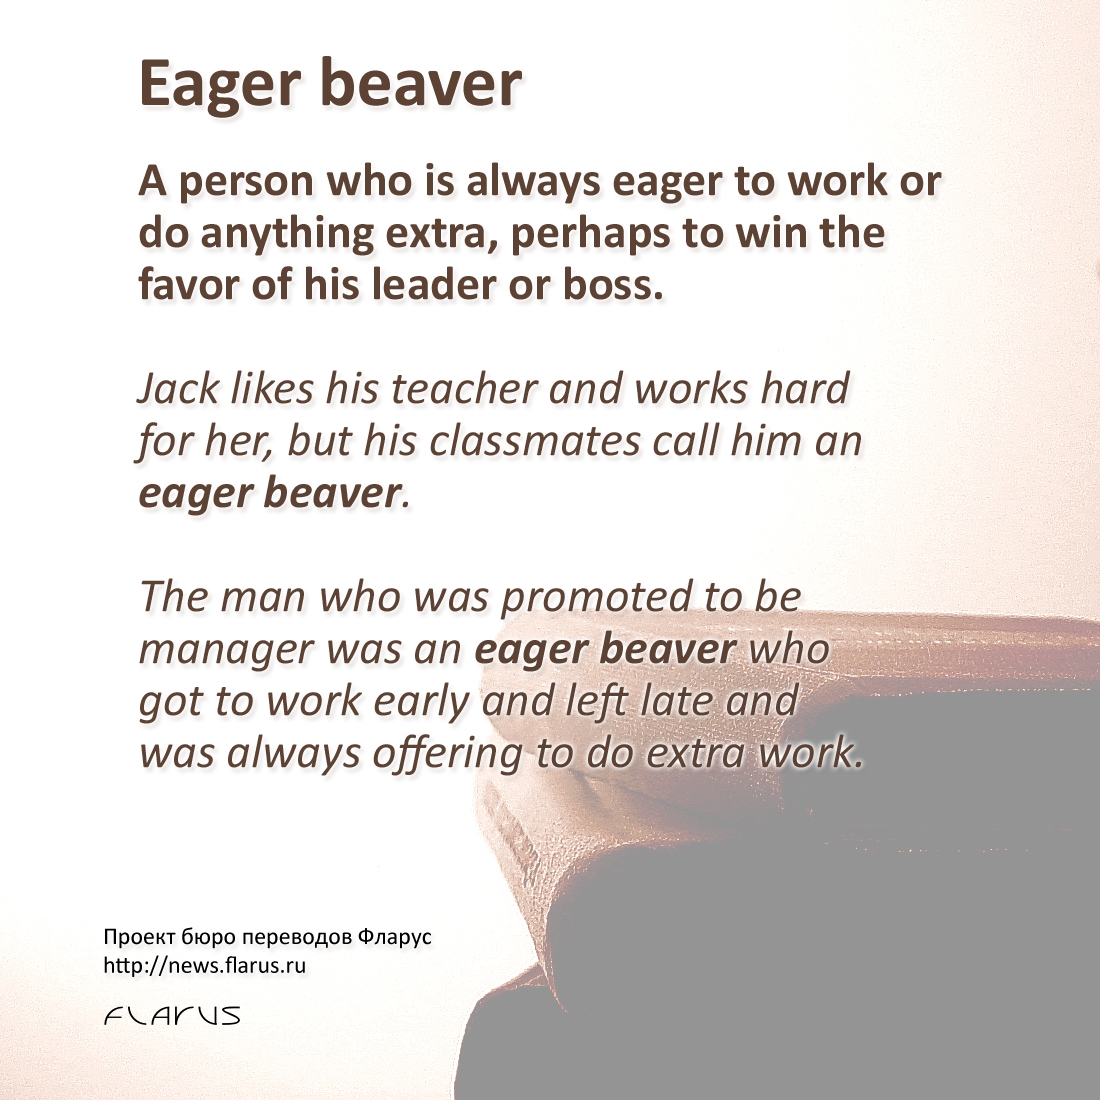 eager beaver